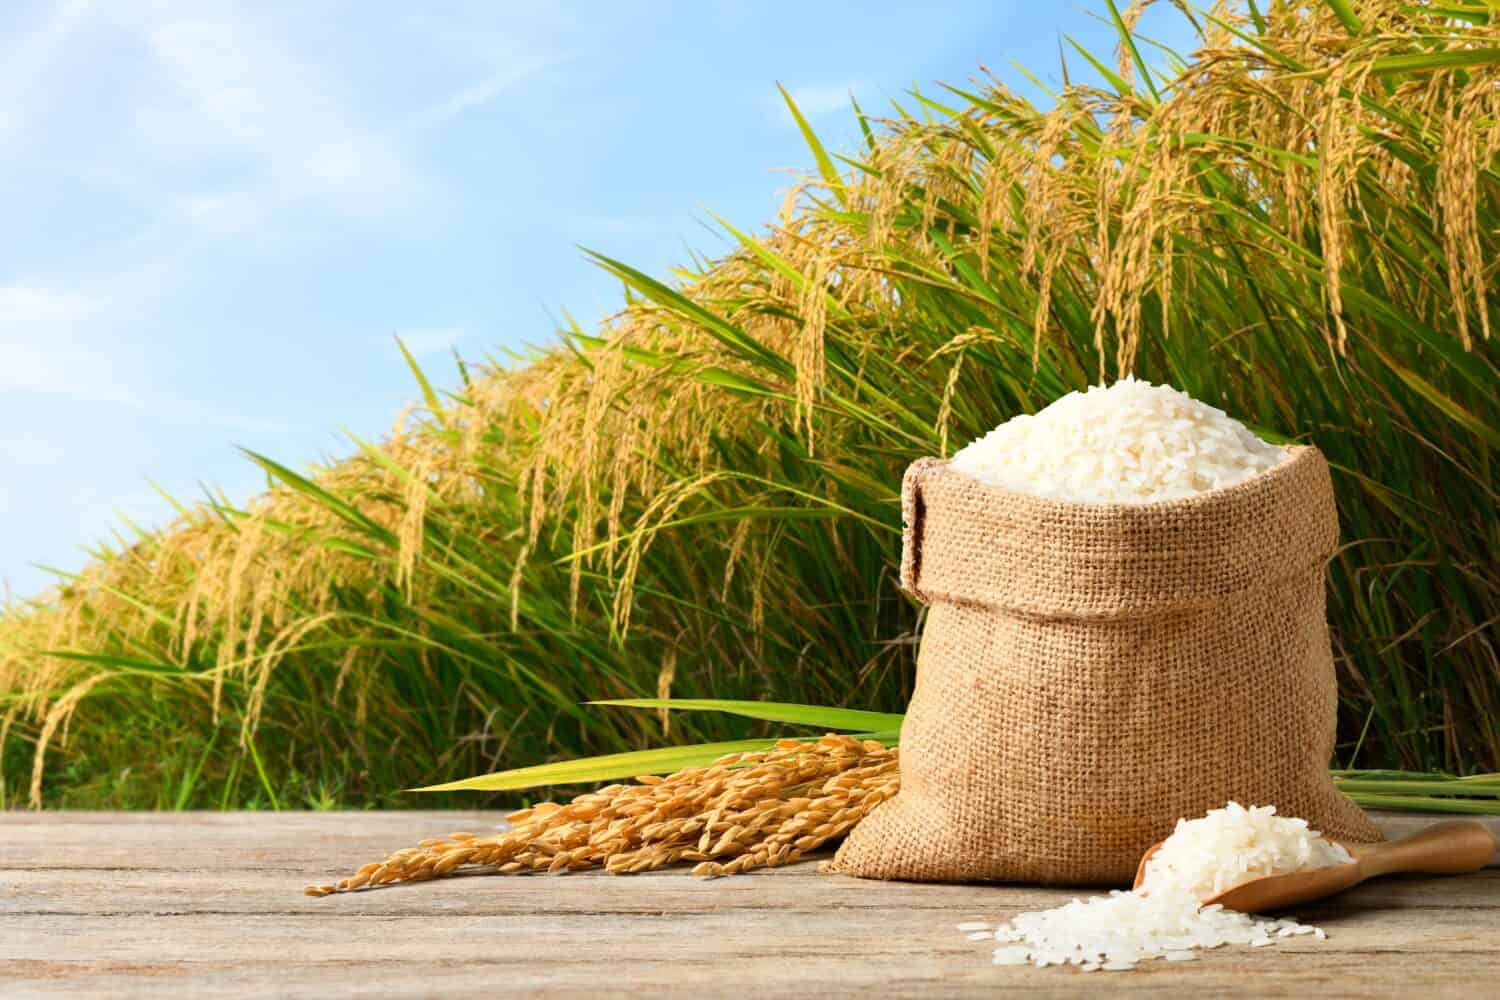 Производство риса в ближайшие пять лет увеличится до 2 млн тонн в год